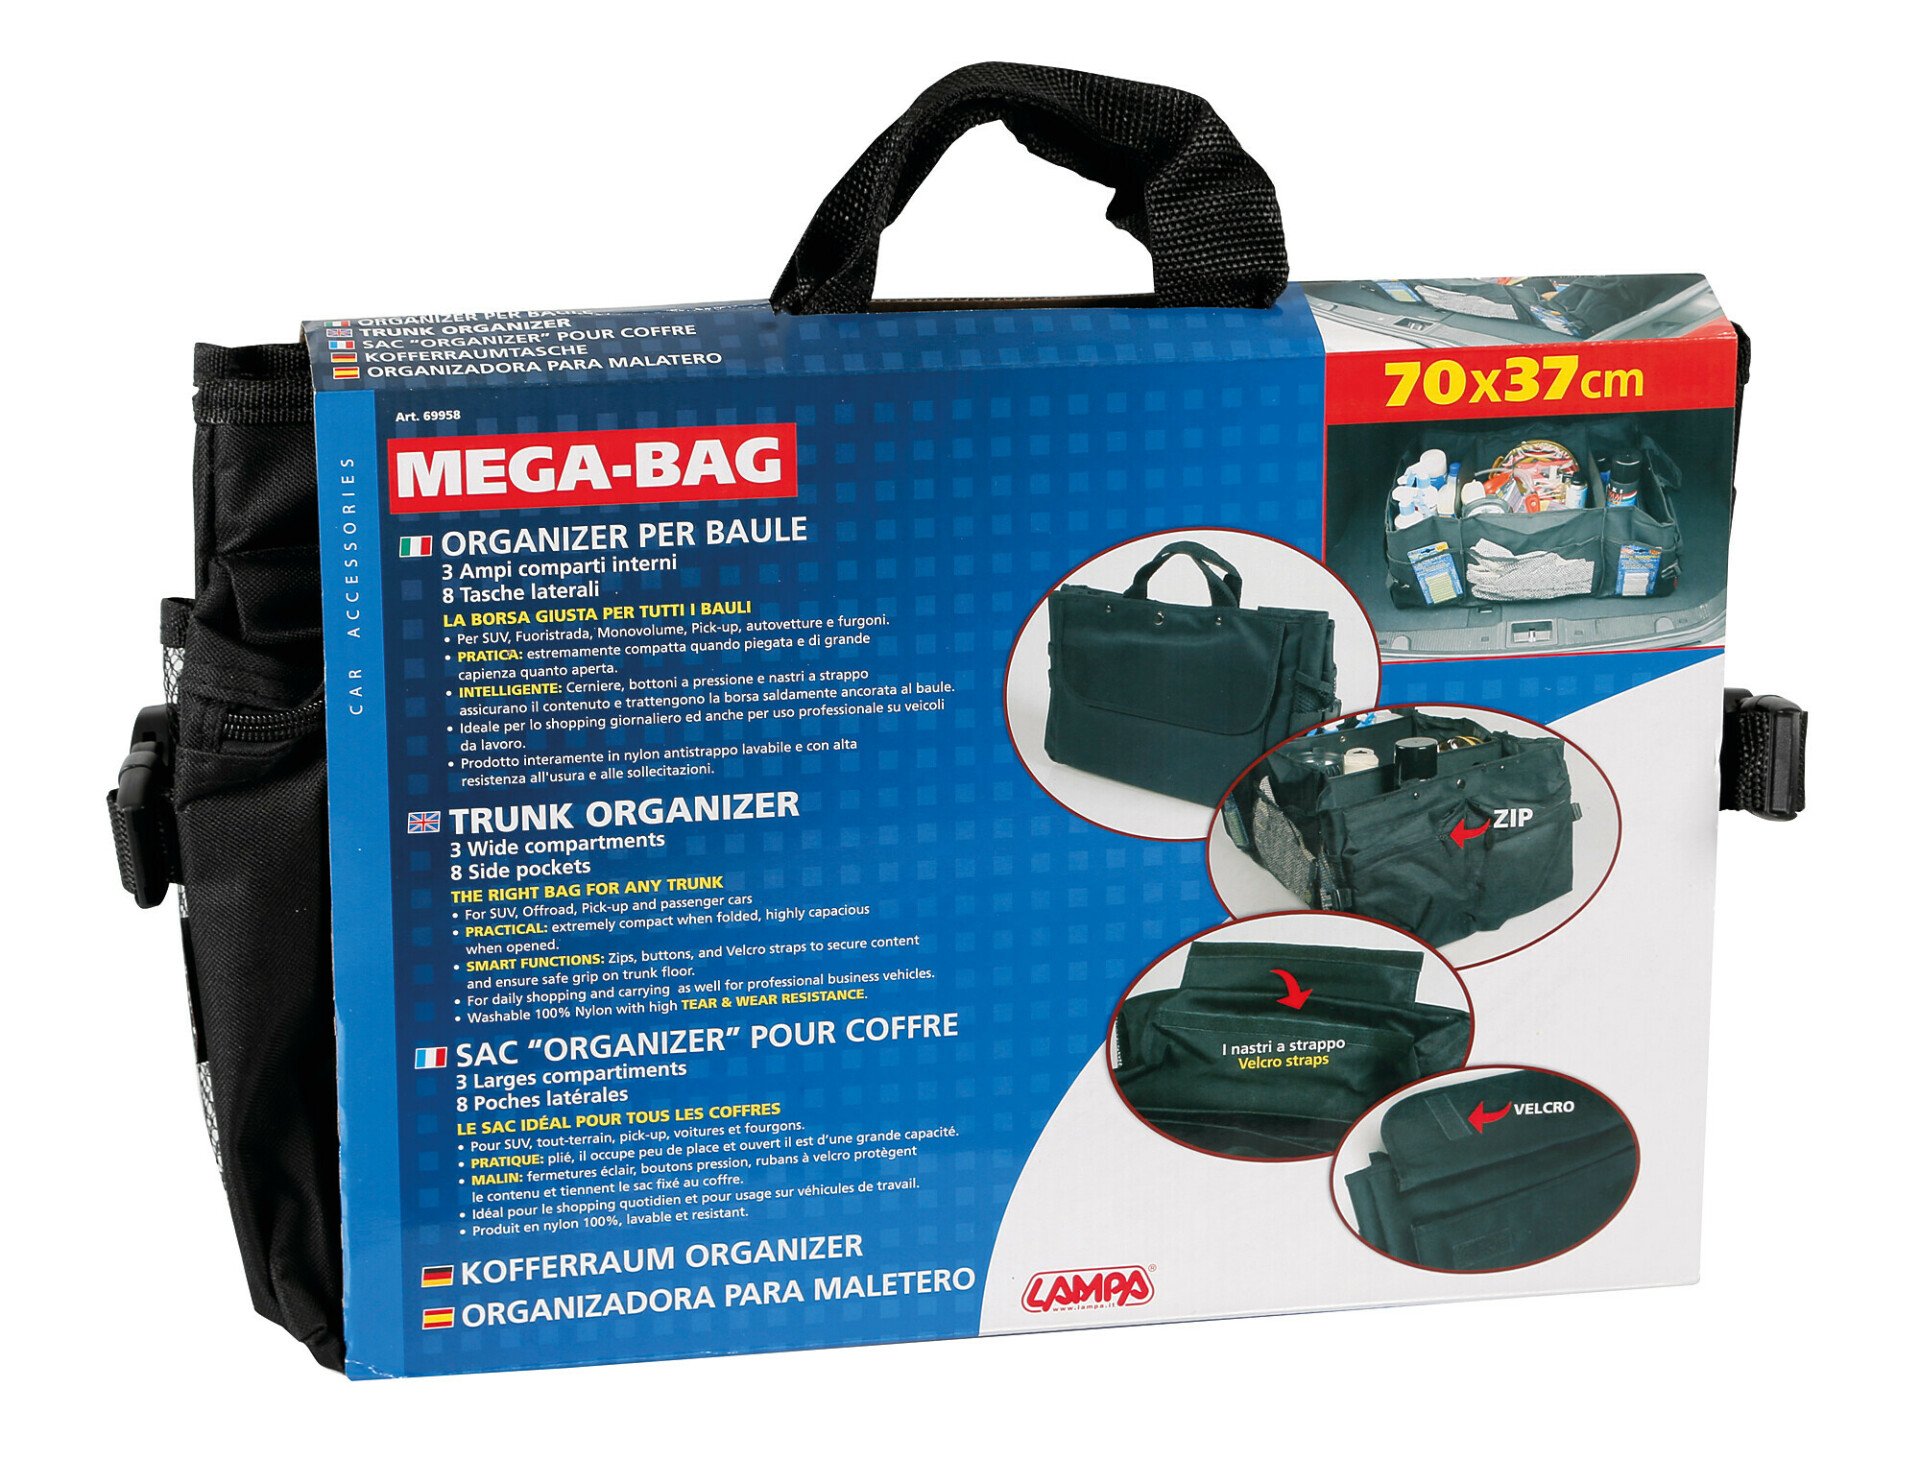 Geanta organizatoare Mega-Bag thumb